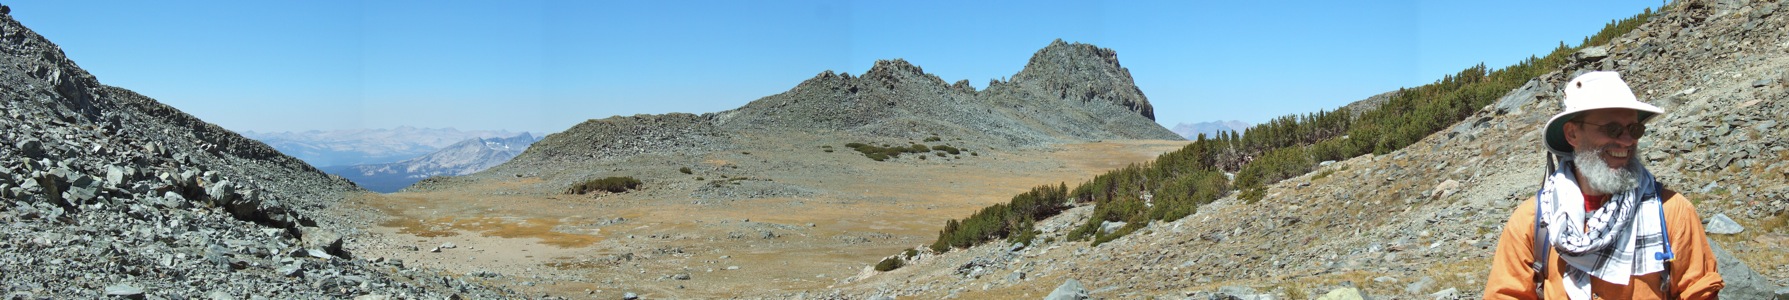 Deer Pass panorama - 9/2010